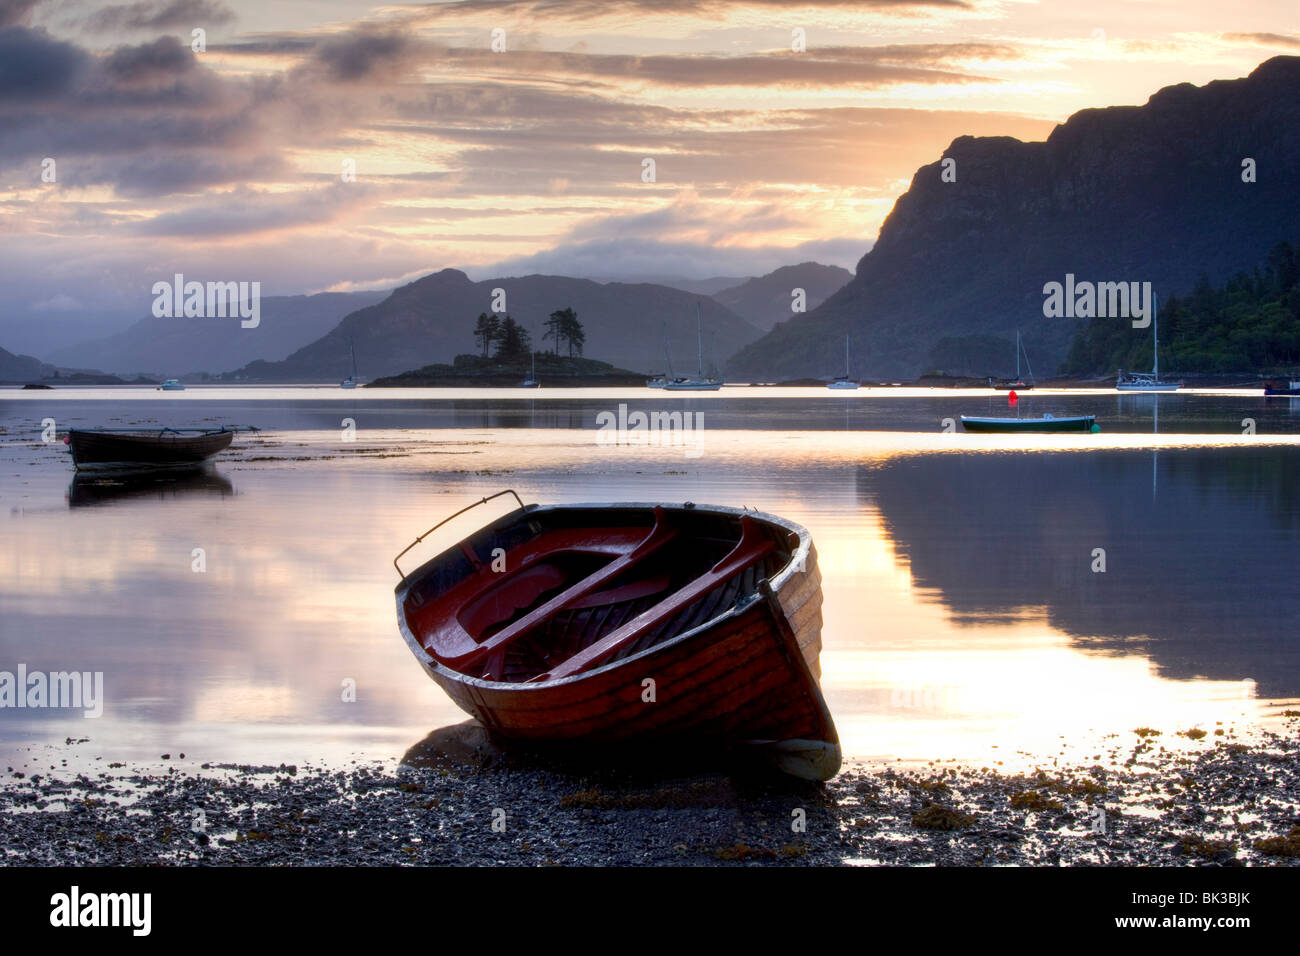 Alba visualizza a bassa marea con barca a remi in primo piano, Plokton, vicino a Kyle of Lochalsh, Highland, Scotland, Regno Unito, Europa Foto Stock